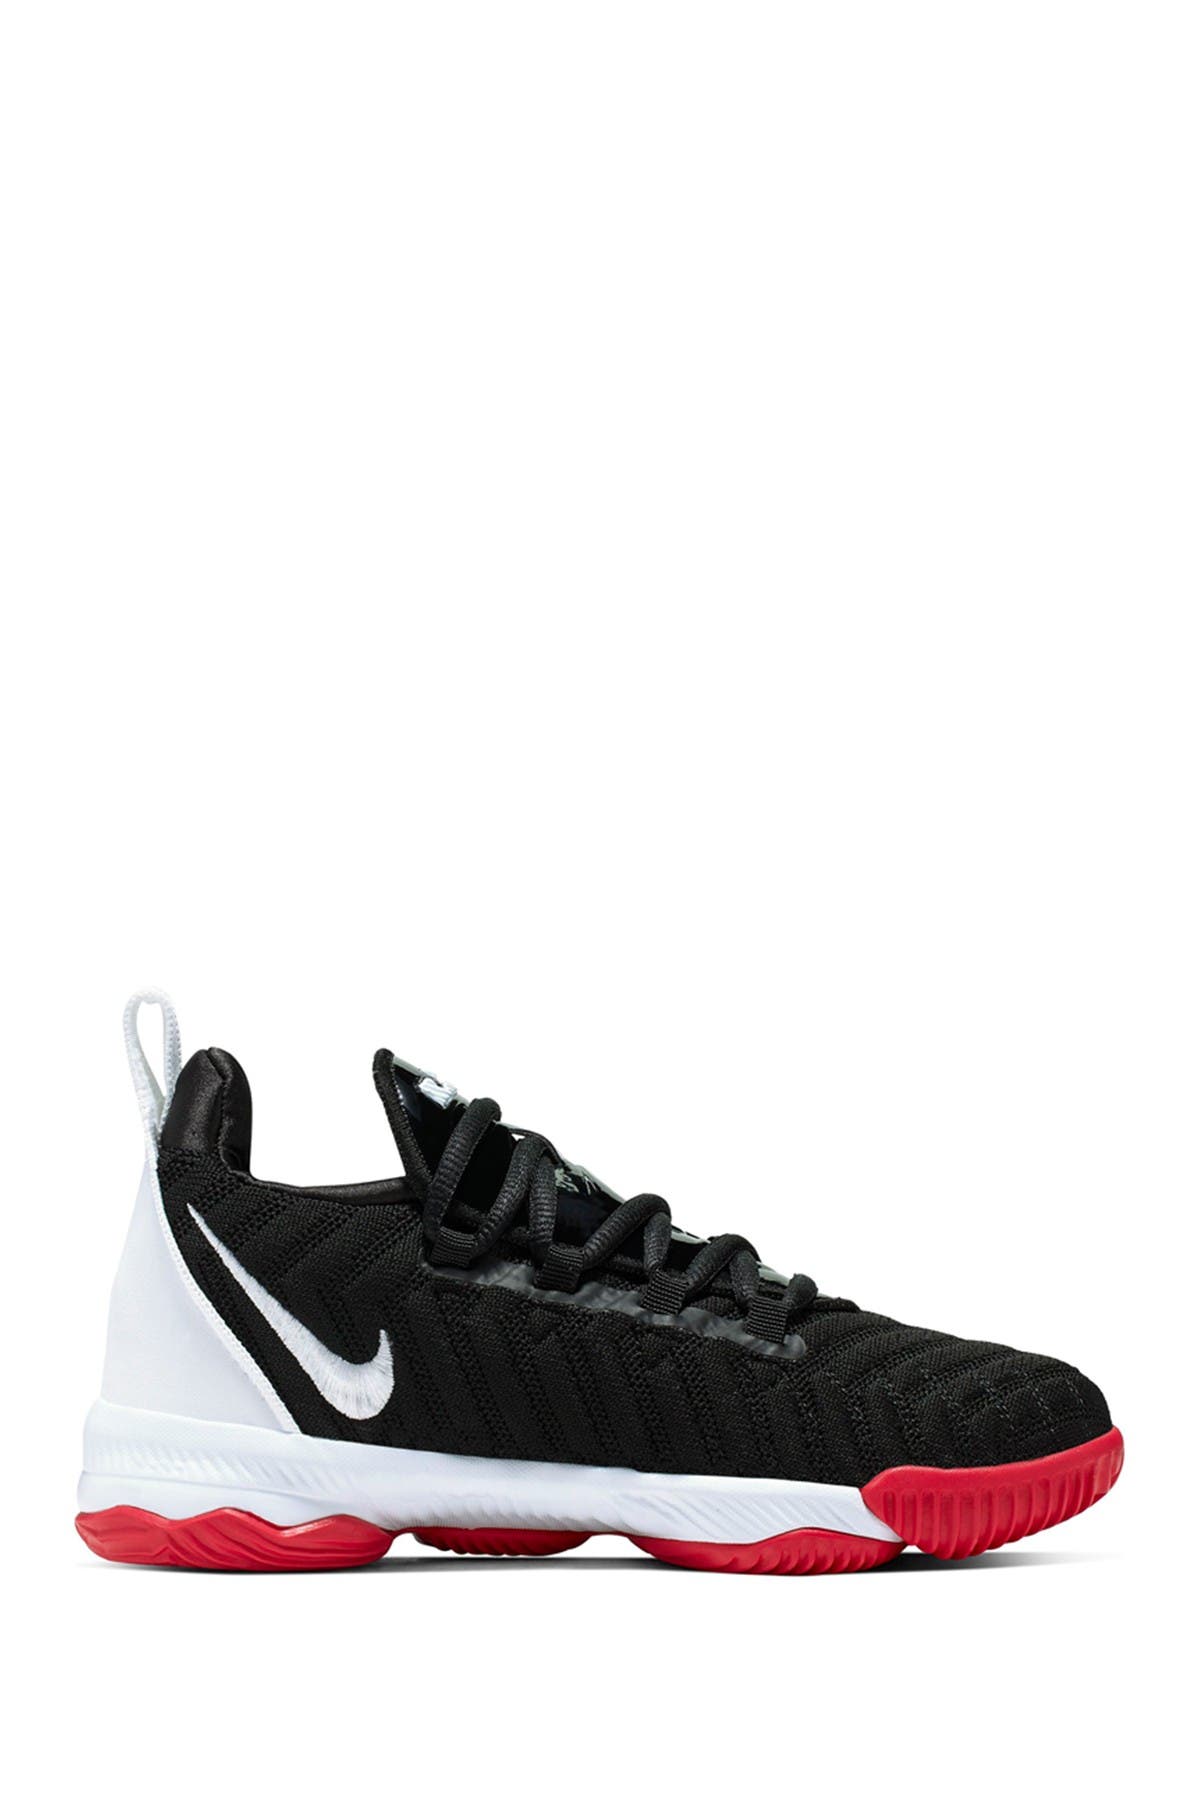 Nike | LeBron 16 Basketball Shoes 